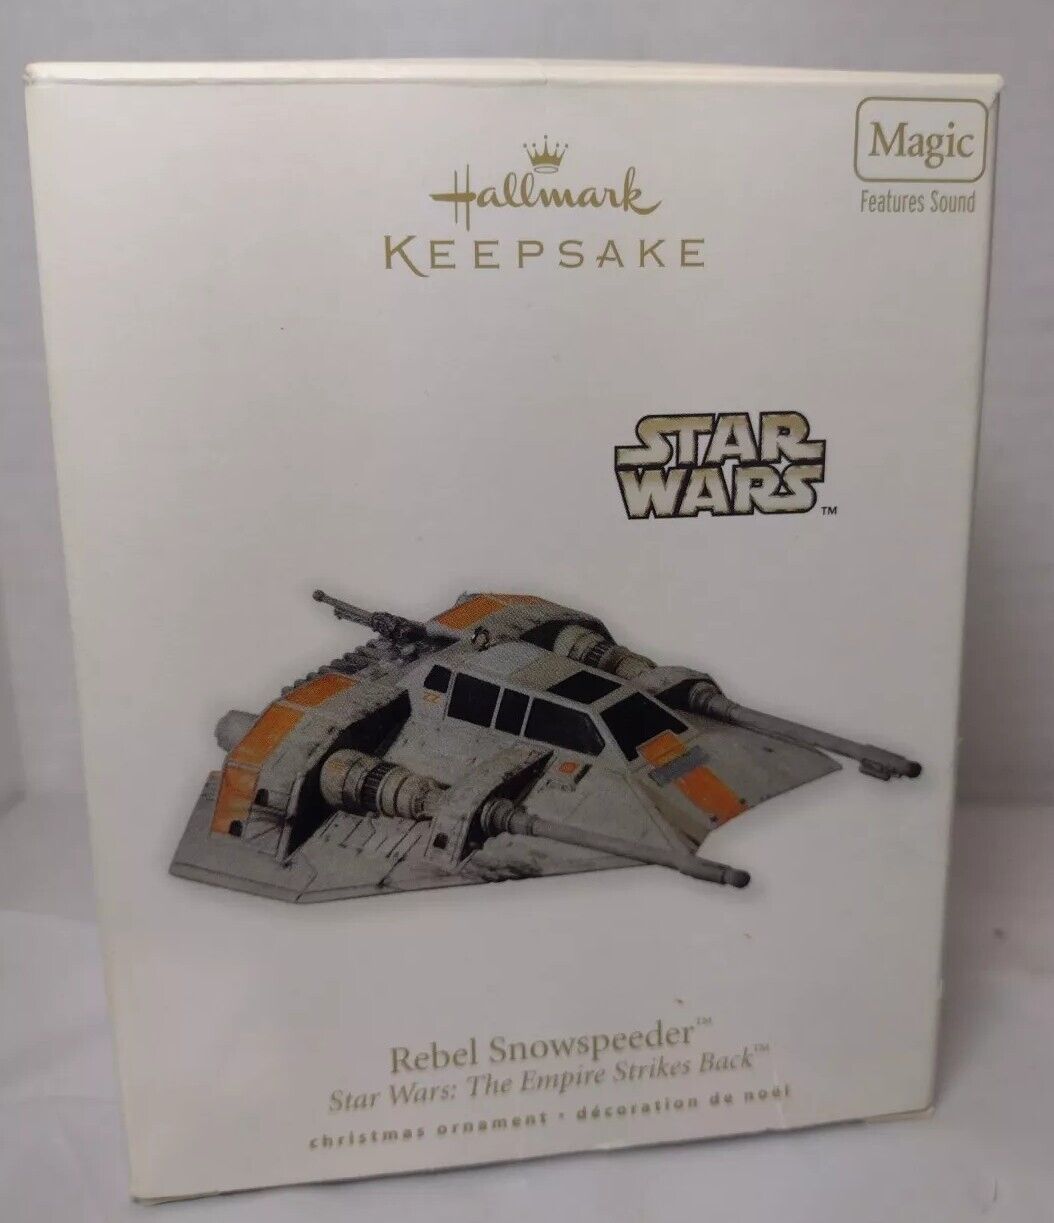 2010 Hallmark Keepsake Ornament Star Wars: Rebel Snowspeeder